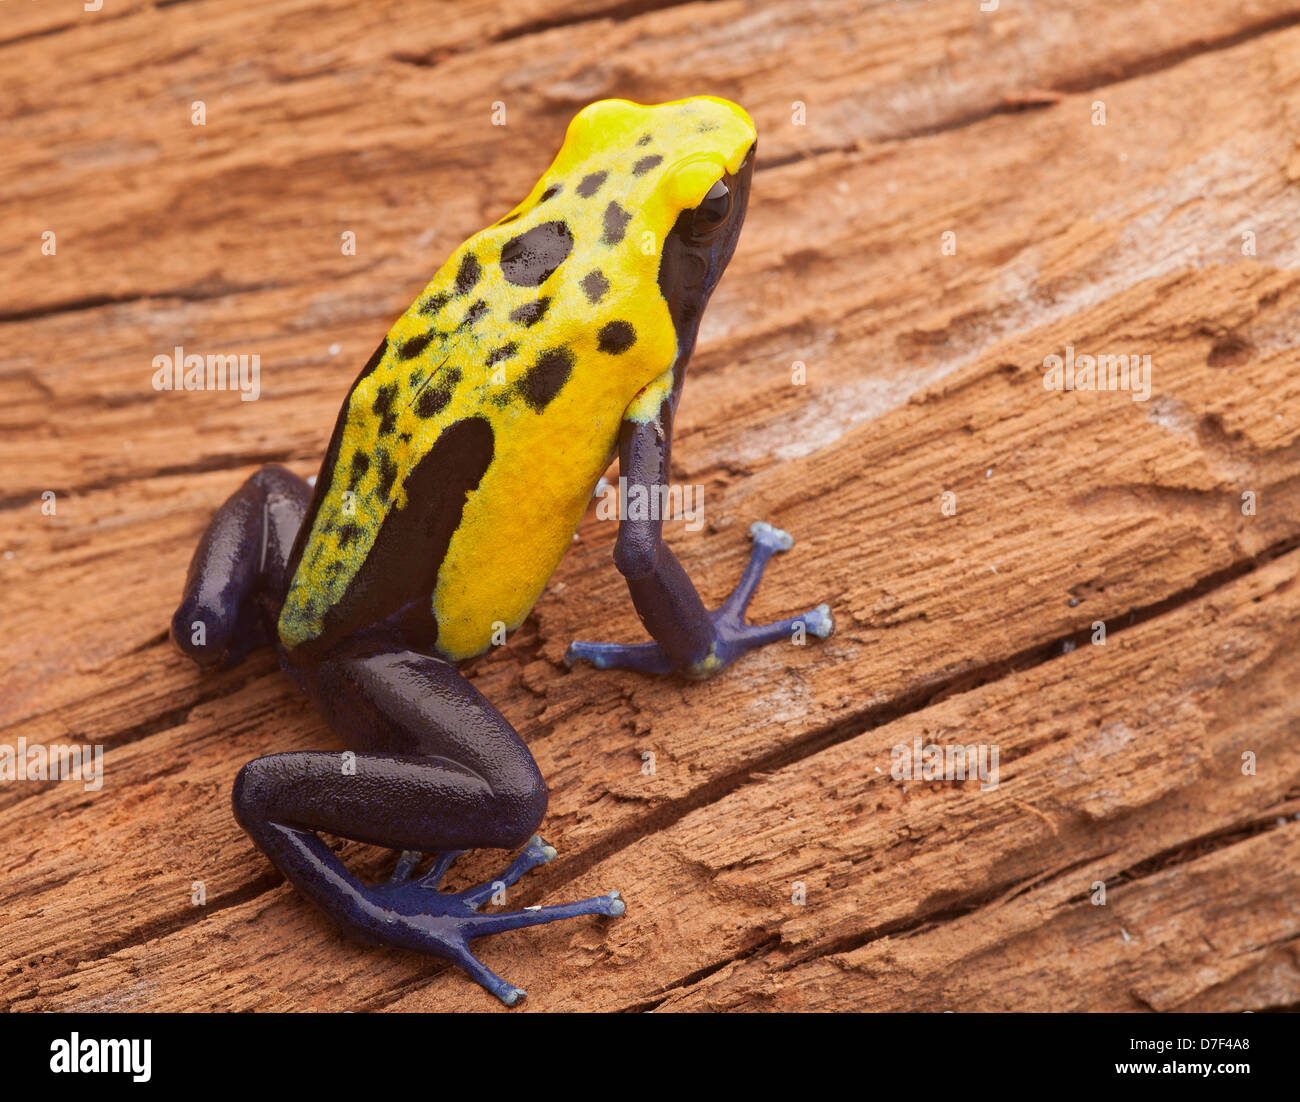 yellow poison dart frog Dendrobates tinctorius citronella from tropical Amazon rainforest of Suriname Stock Photo